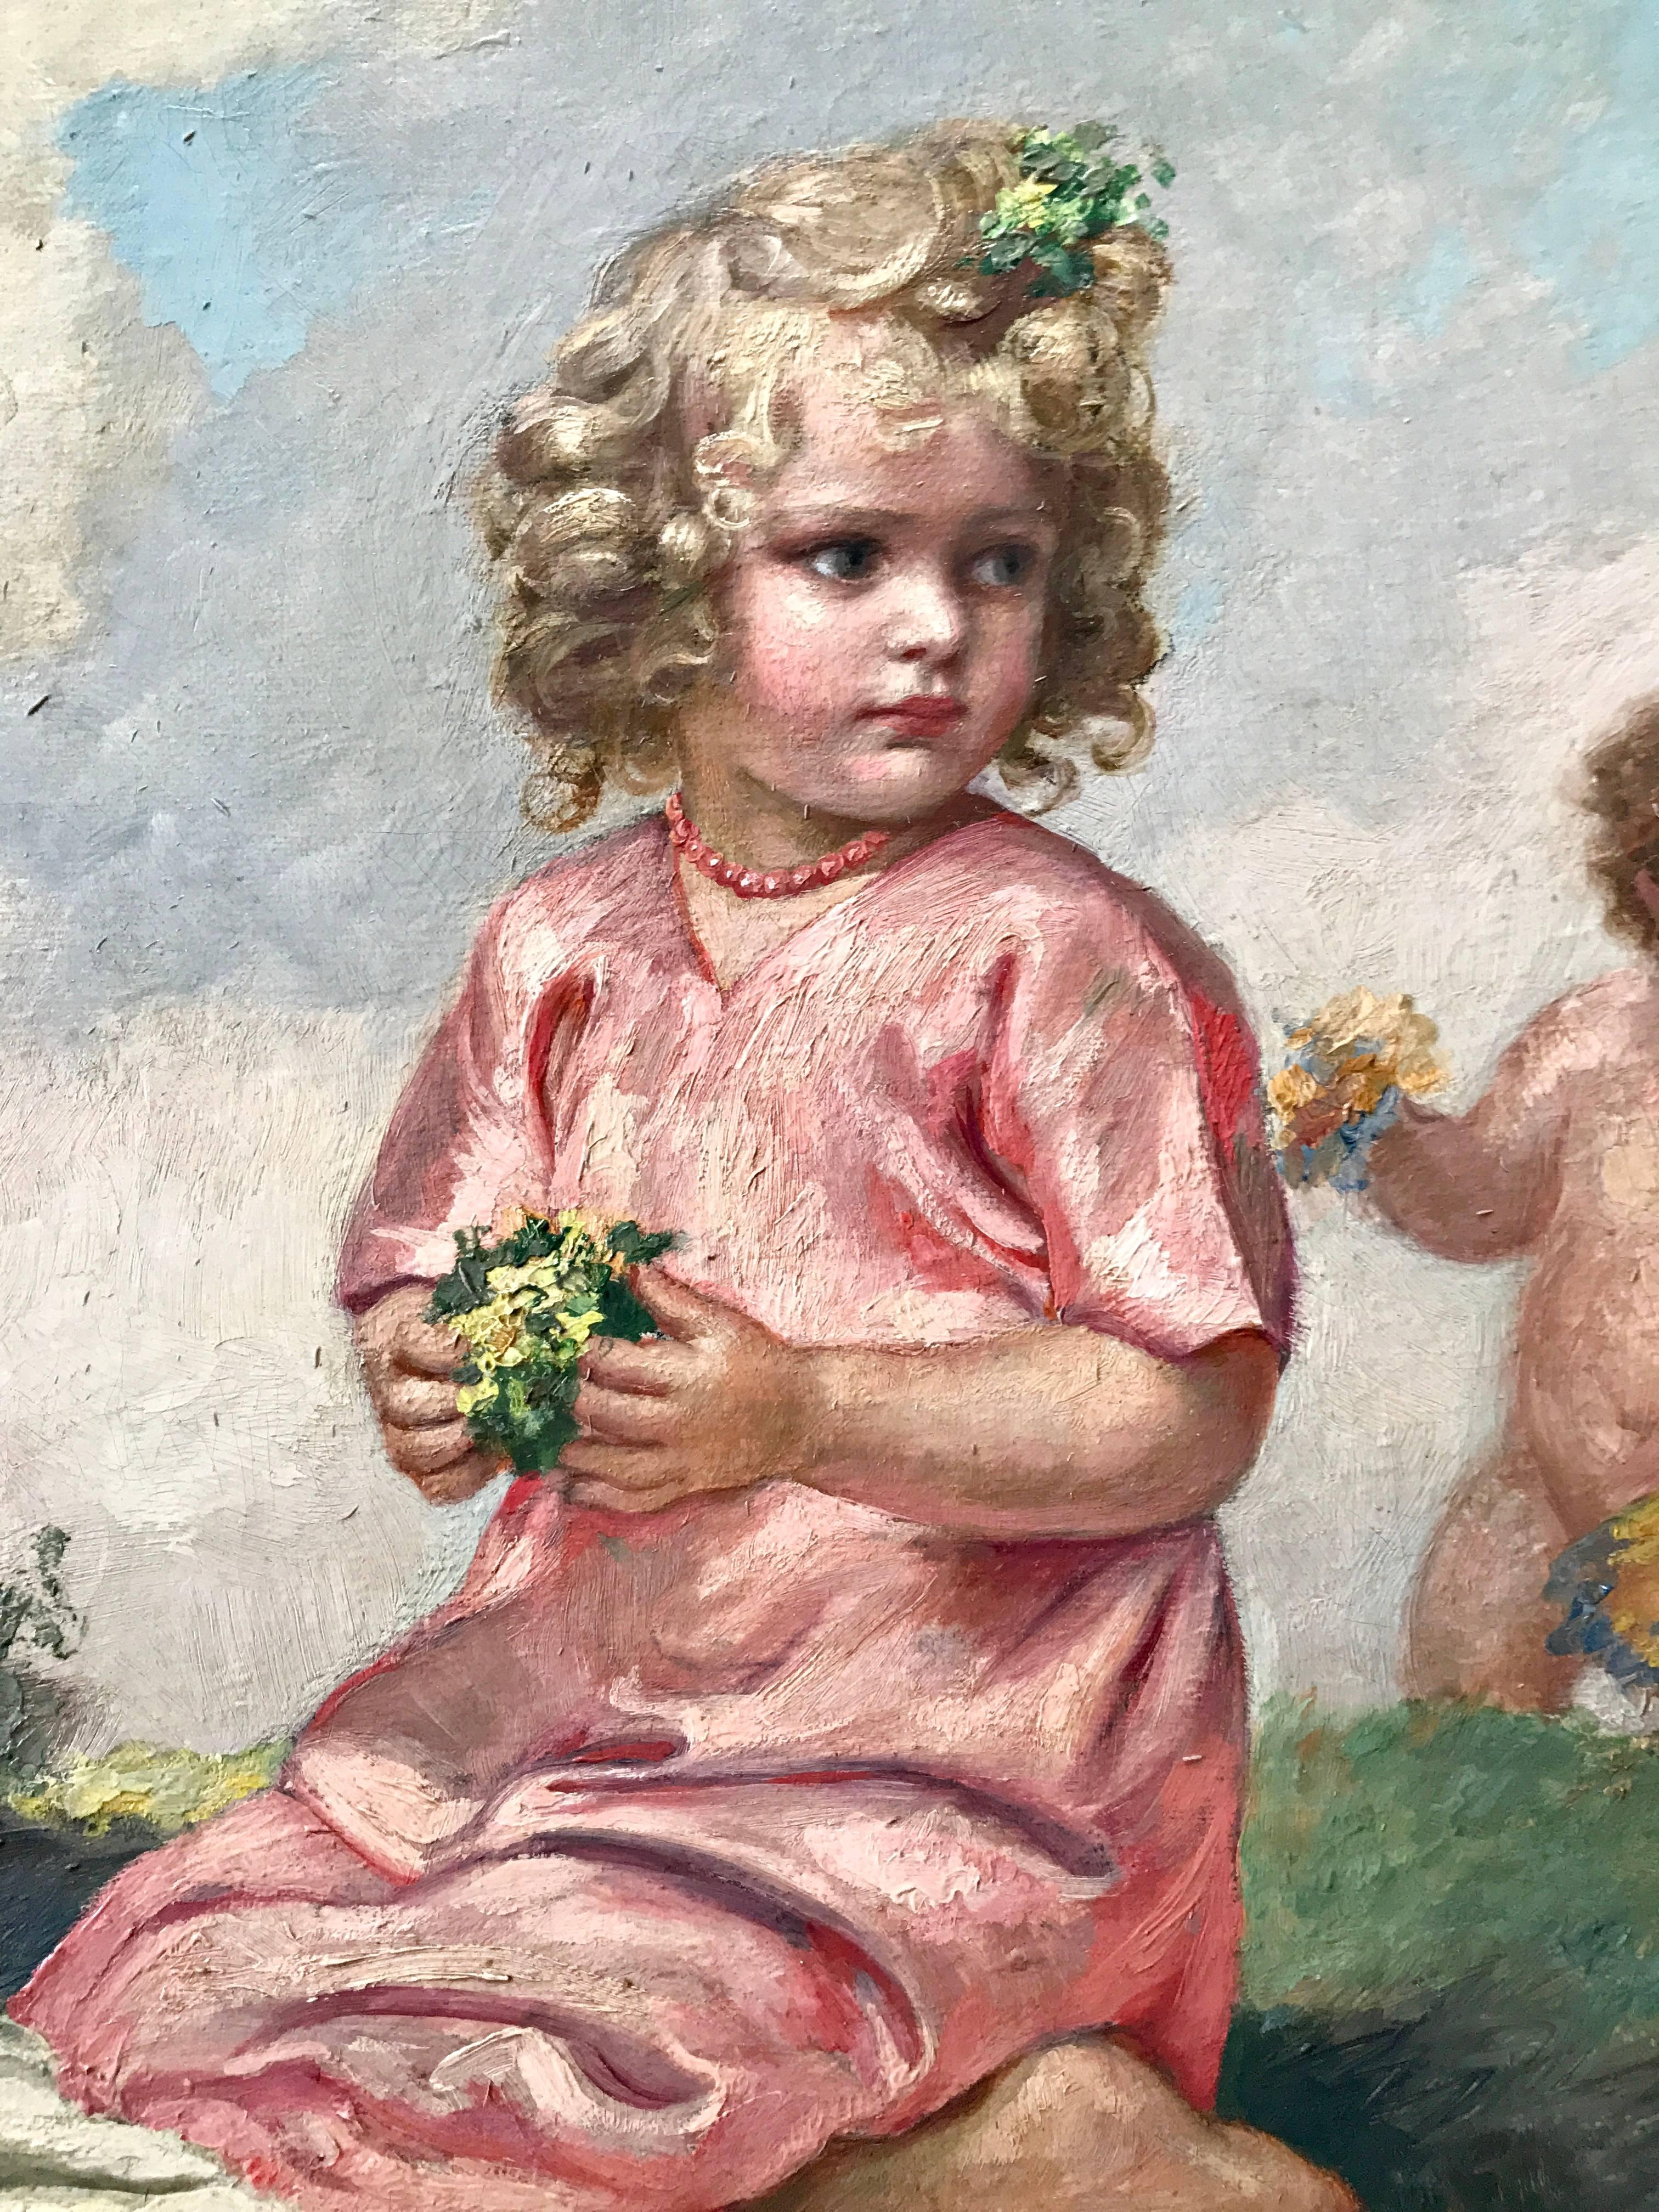 Flowerpodding children - Impressionist Painting by Carl Plückebaum